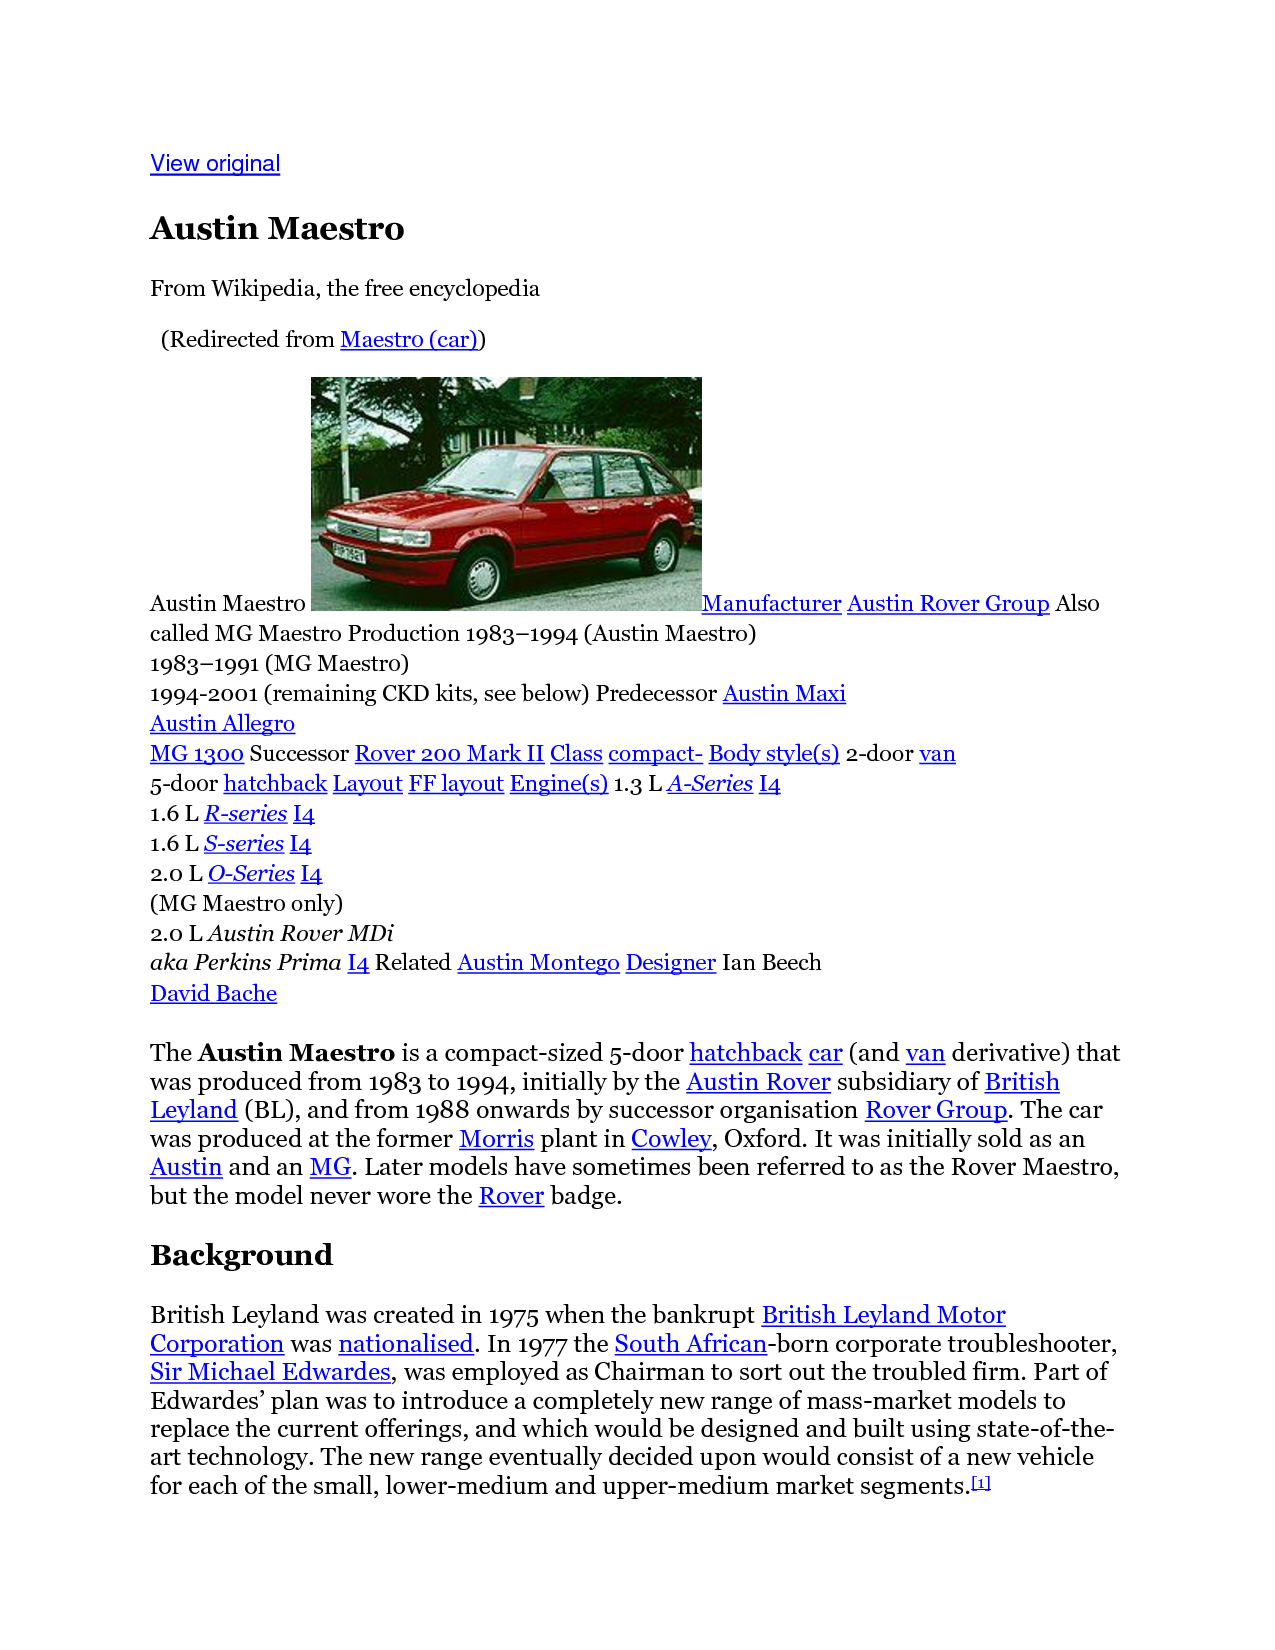 Austin Maestro 2.0